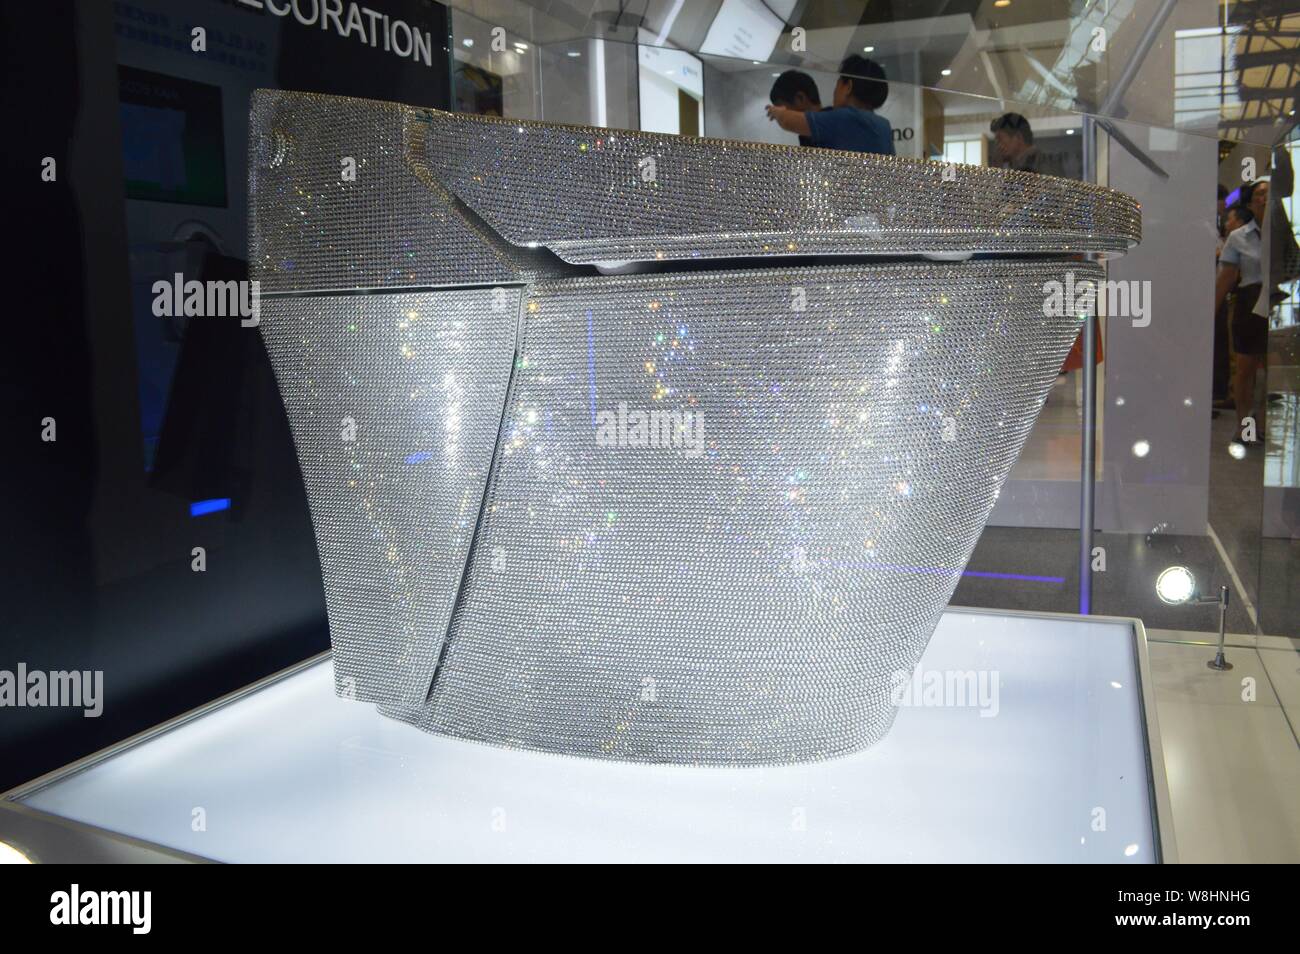 Eine Toilette mit 72.000 Swarovski-Kristallen verziert ist auf dem Stand  von Inax der japanischen Badezimmerarmaturenherstellers LIXIL während Küche  Stockfotografie - Alamy